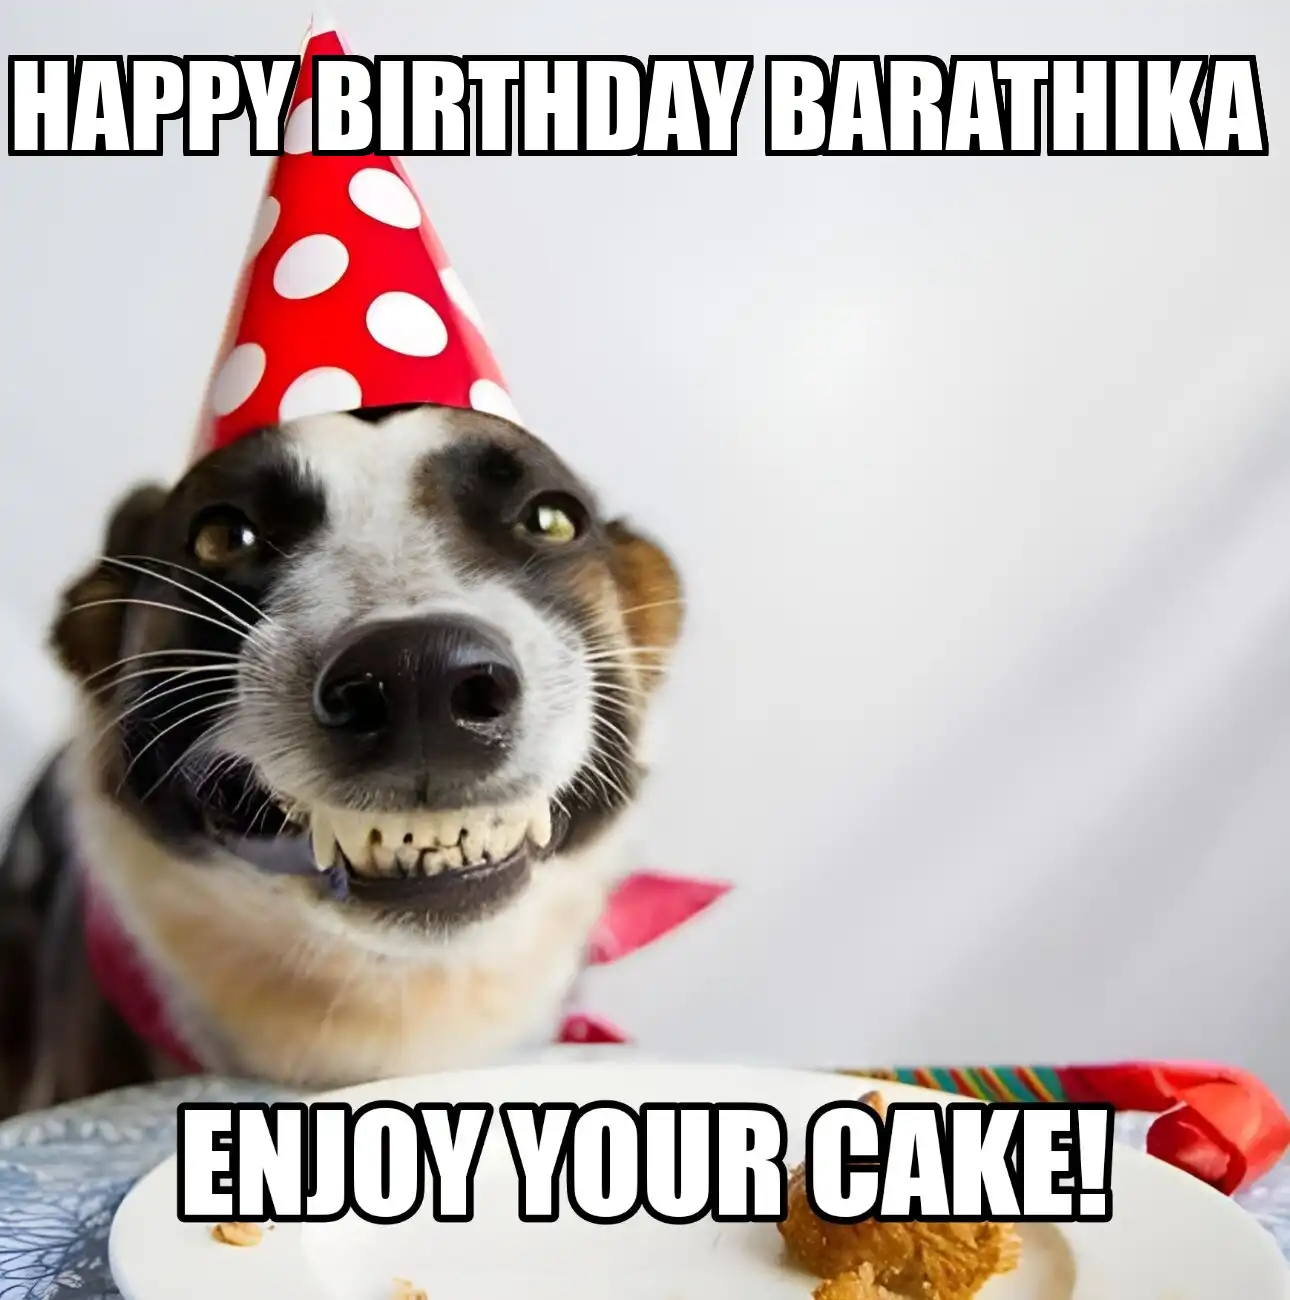 Happy Birthday Barathika Enjoy Your Cake Dog Meme